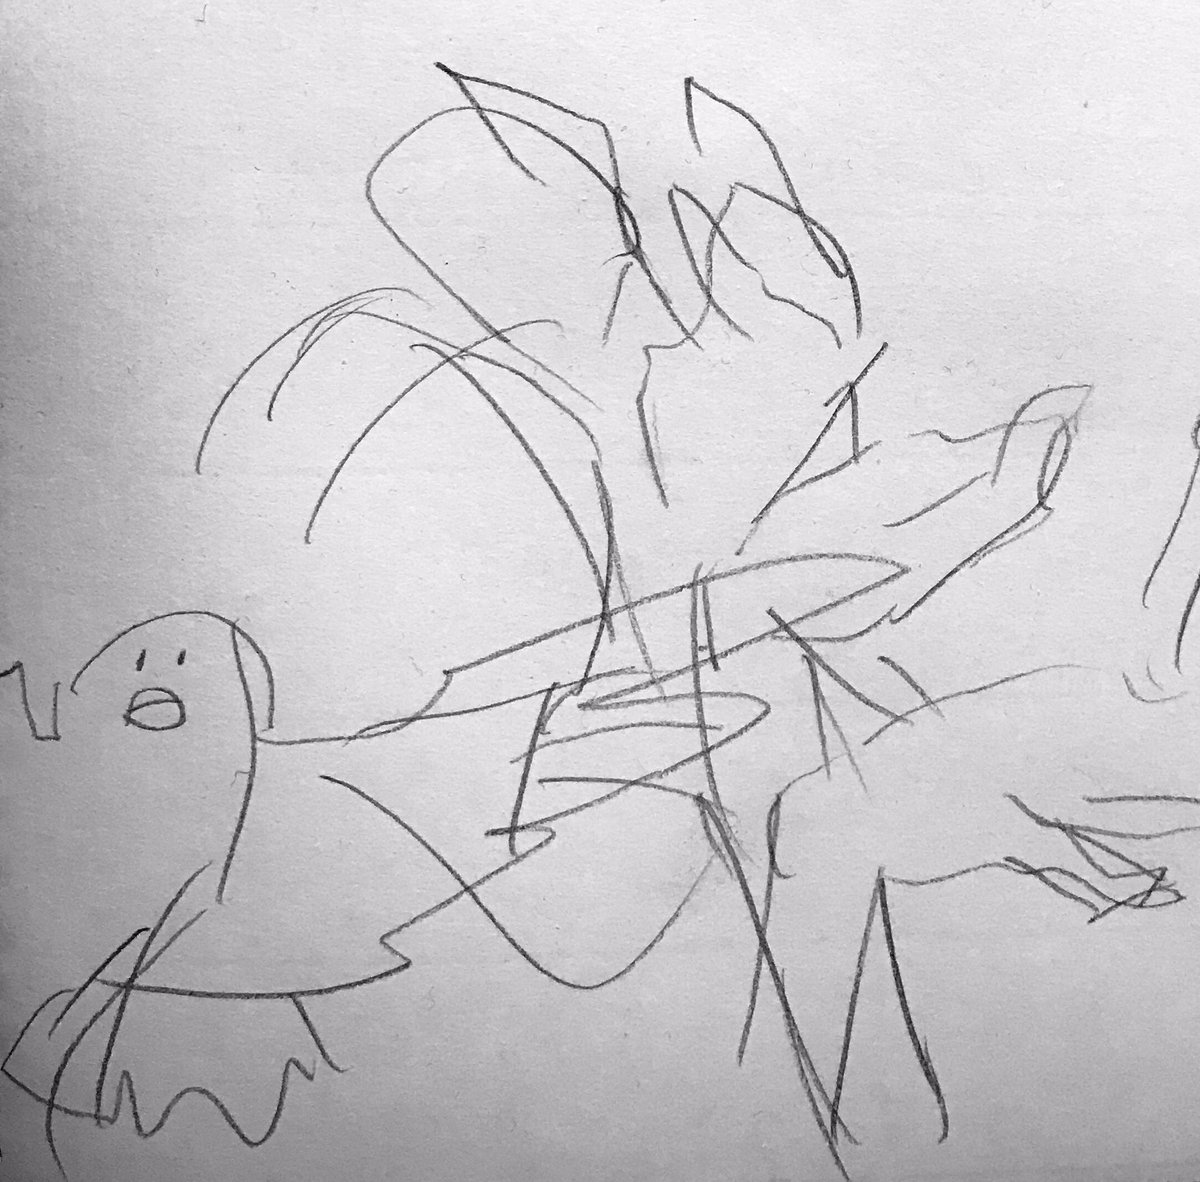 10秒で描いたラフを清書するのやつ
正解編:ラフの鳥の顔ほんま…

空楽さん @Karaku_michael 
やまゆ @YaaaM_BT 
遊んでくれてありがとー! 